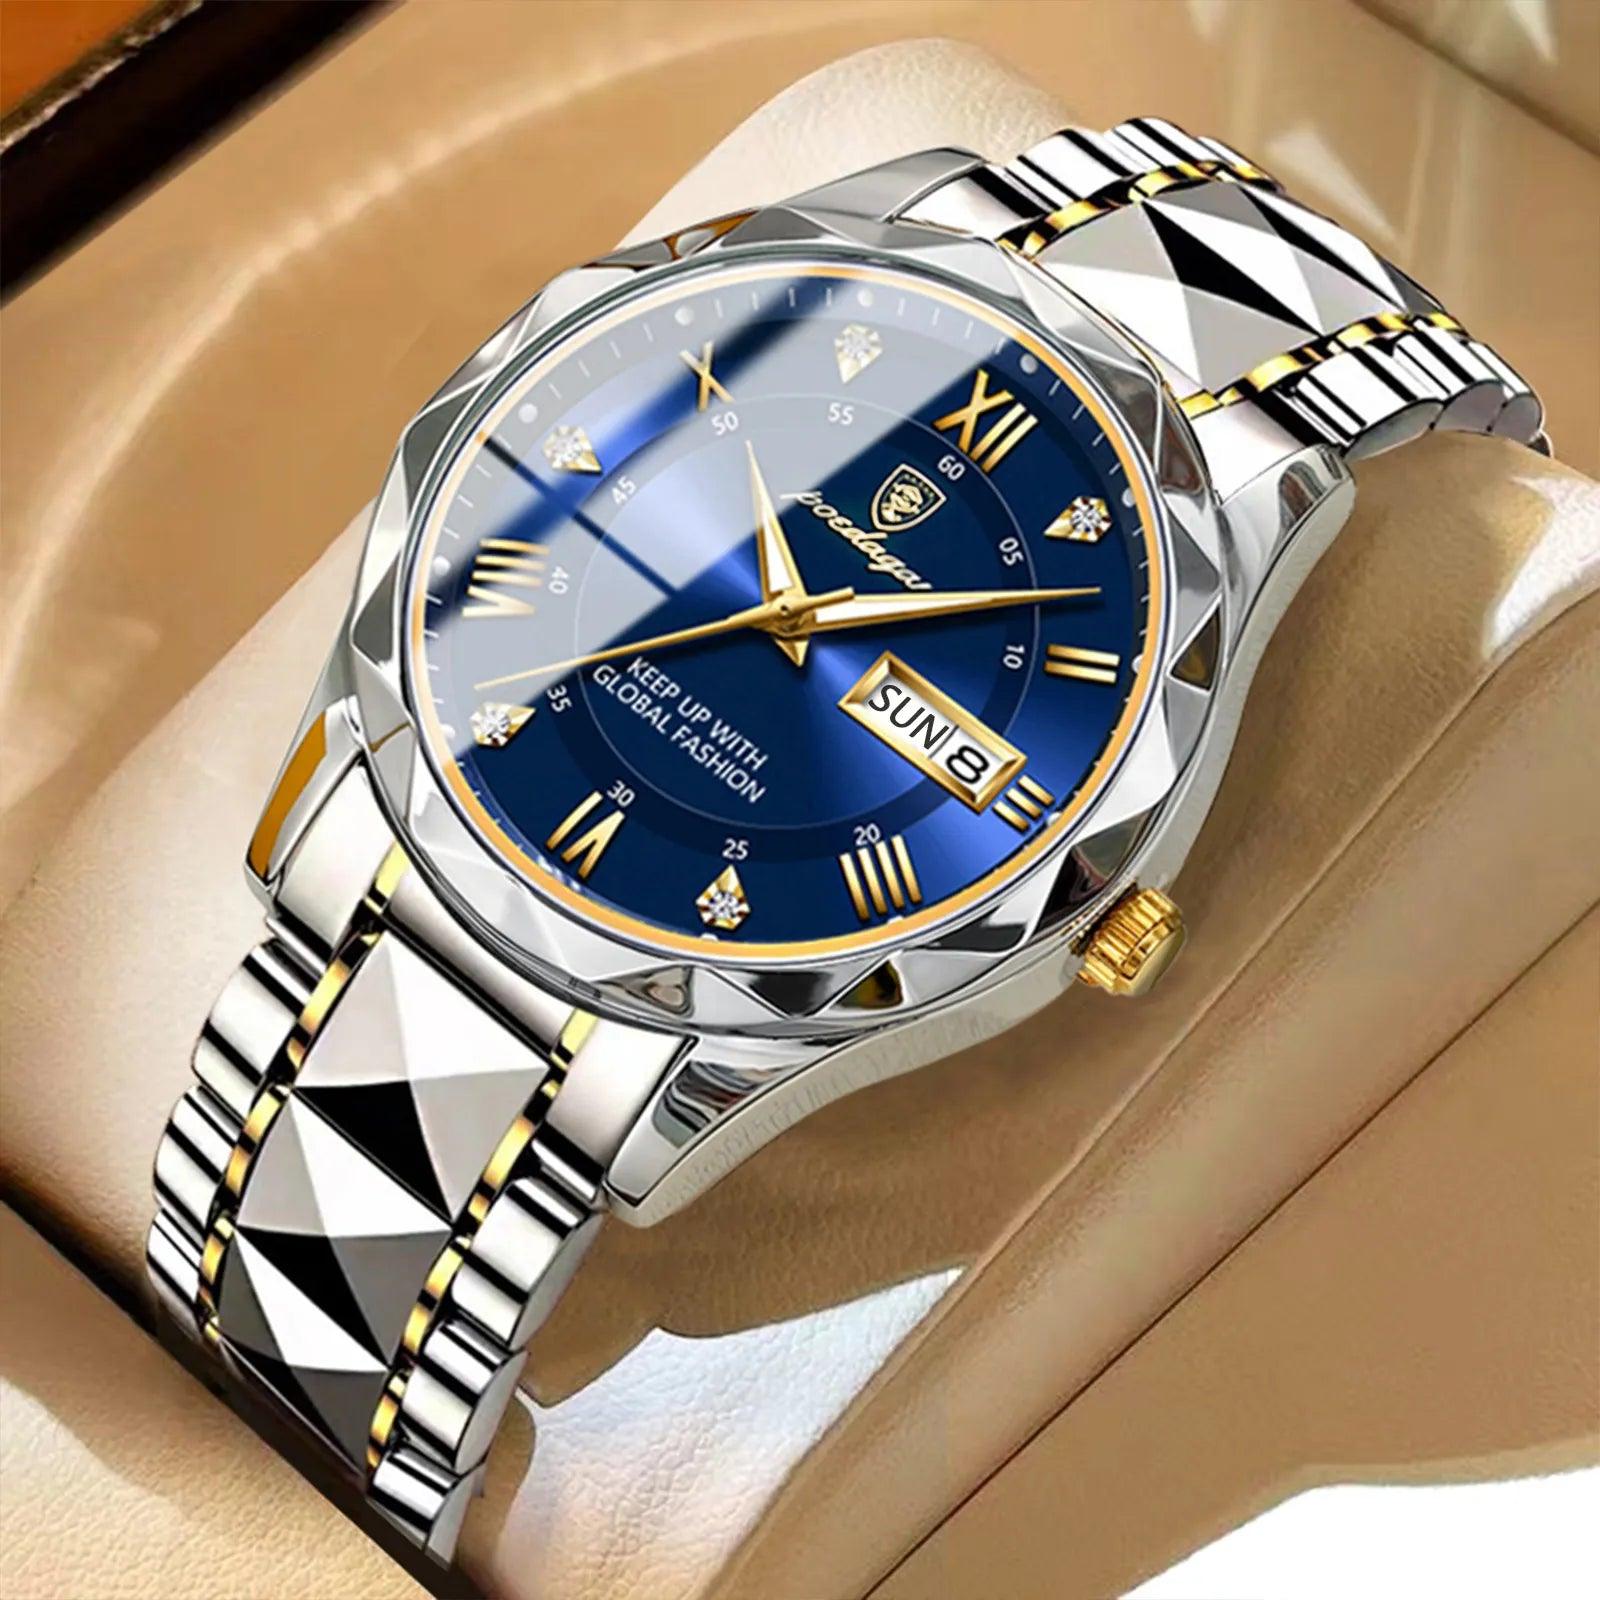 POEDAGAR Luxury Stainless Steel Quartz Men's Watch - Stylish Waterproof Timepiece  ourlum.com   